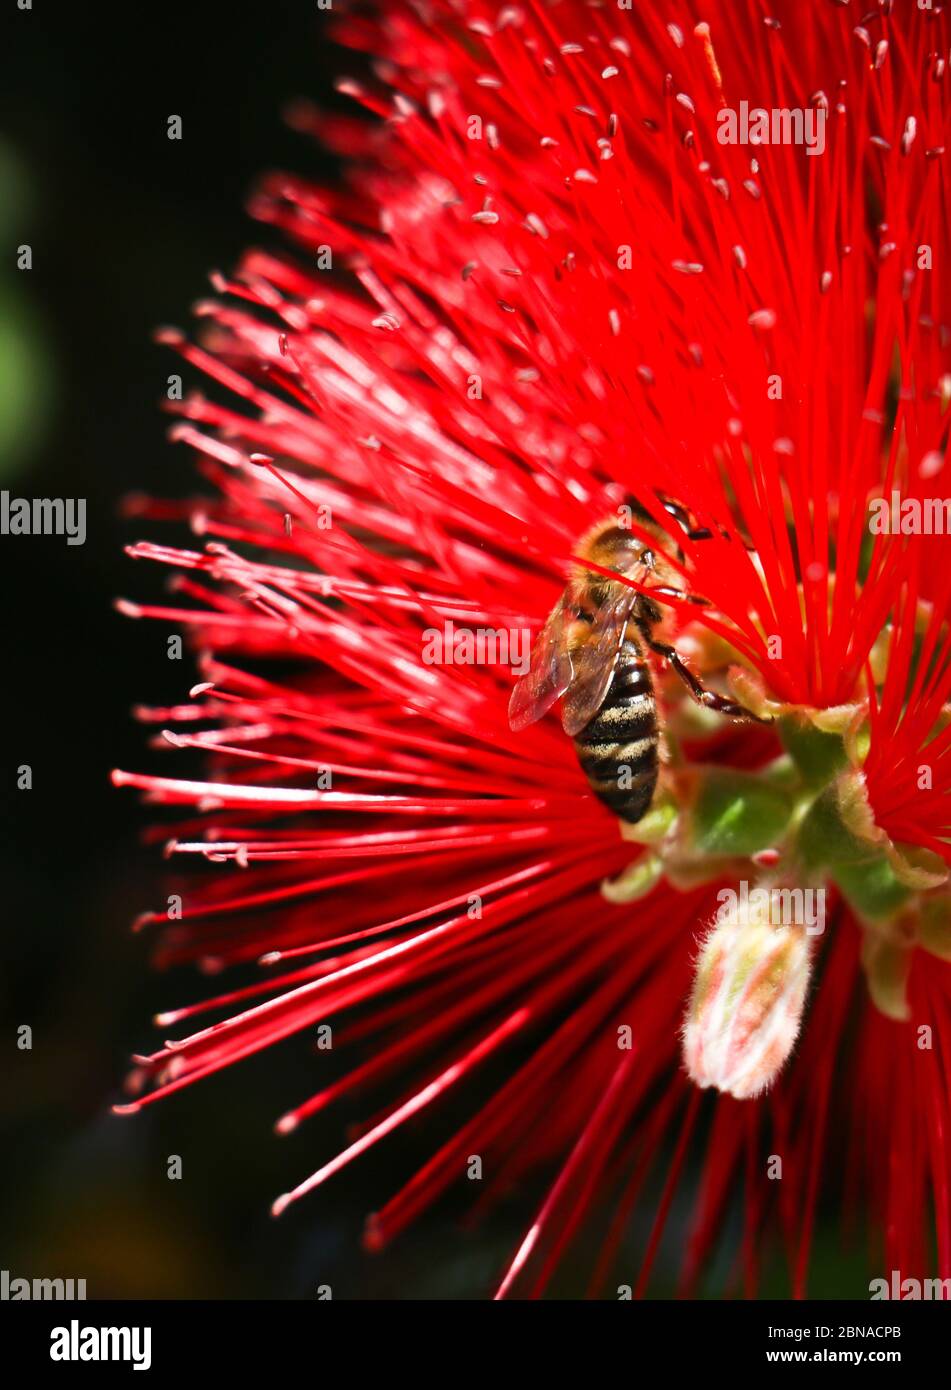 Concept de pollinisation. L'abeille jaune et noire sur la fleur rouge de callistemon recueille le nectar de la plante pour le transformer en miel, photo verticale. Banque D'Images